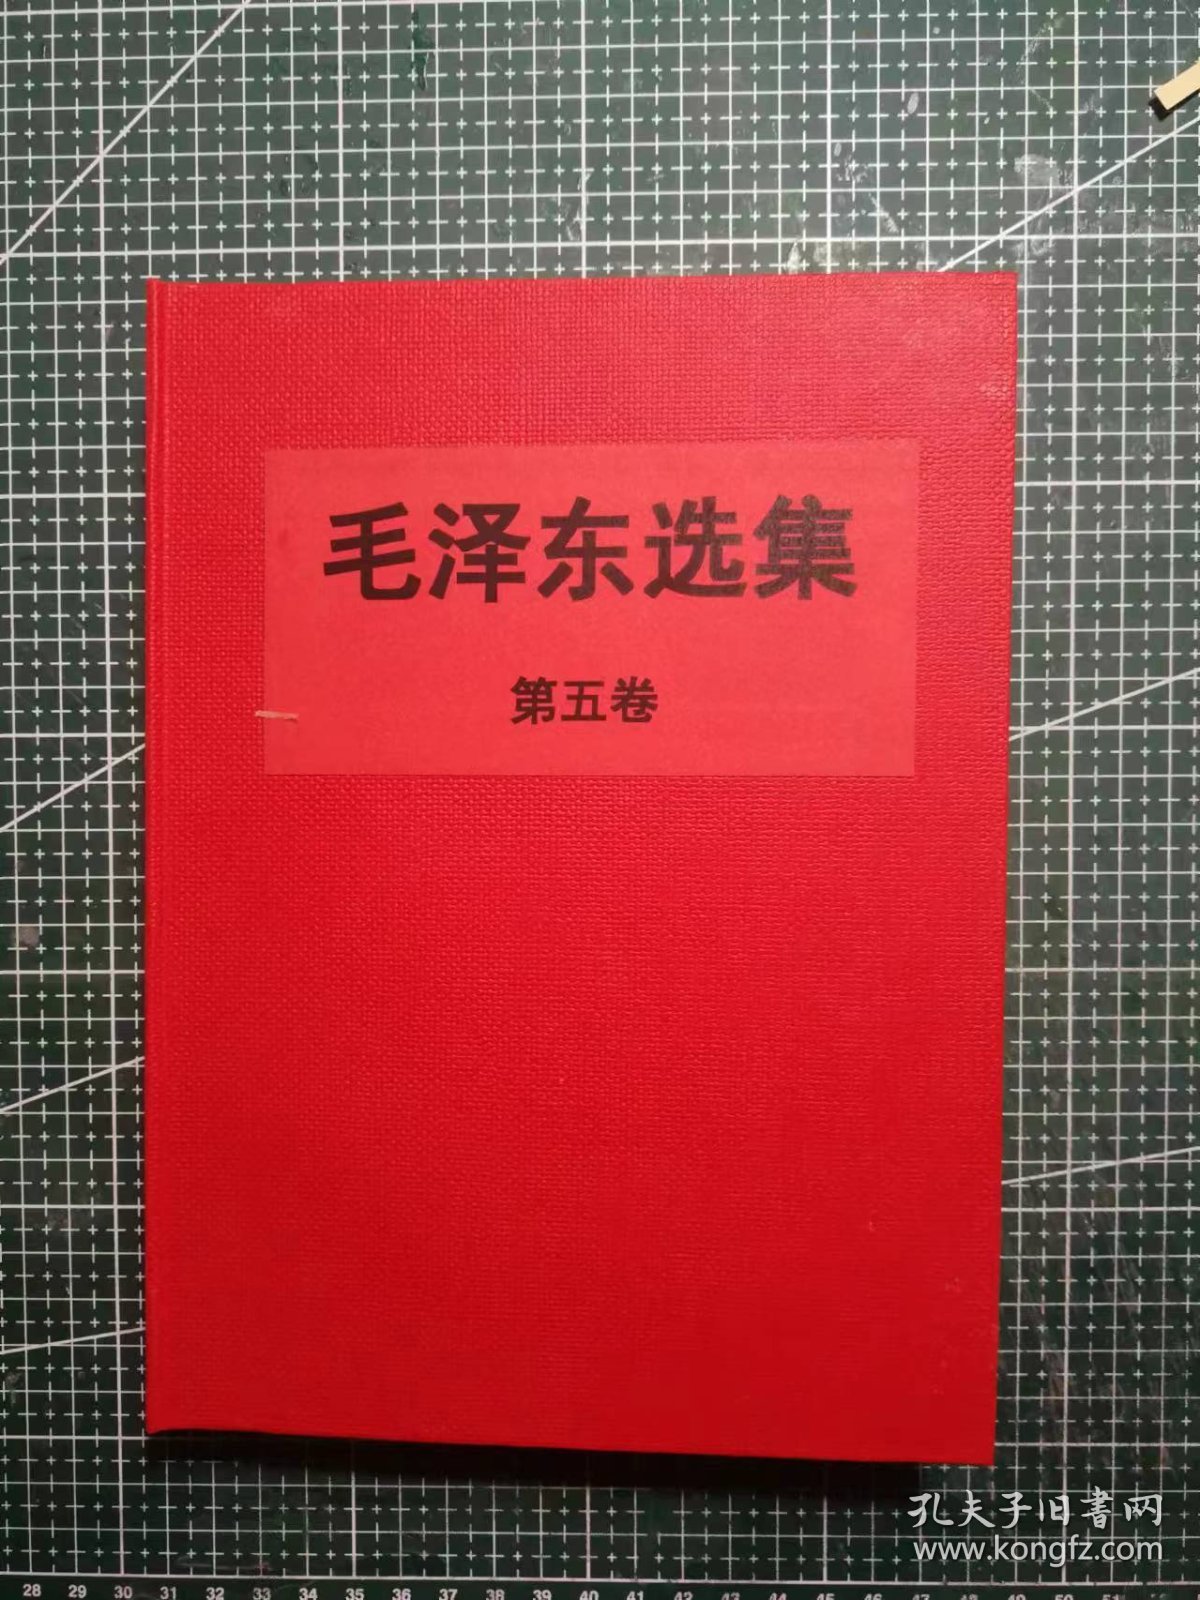 大三十二开《毛泽东选集》第五卷，北京新华印刷厂印刷，1977年4月第1版1977年4月北京第1次印刷，手工改红色软精装。M0517